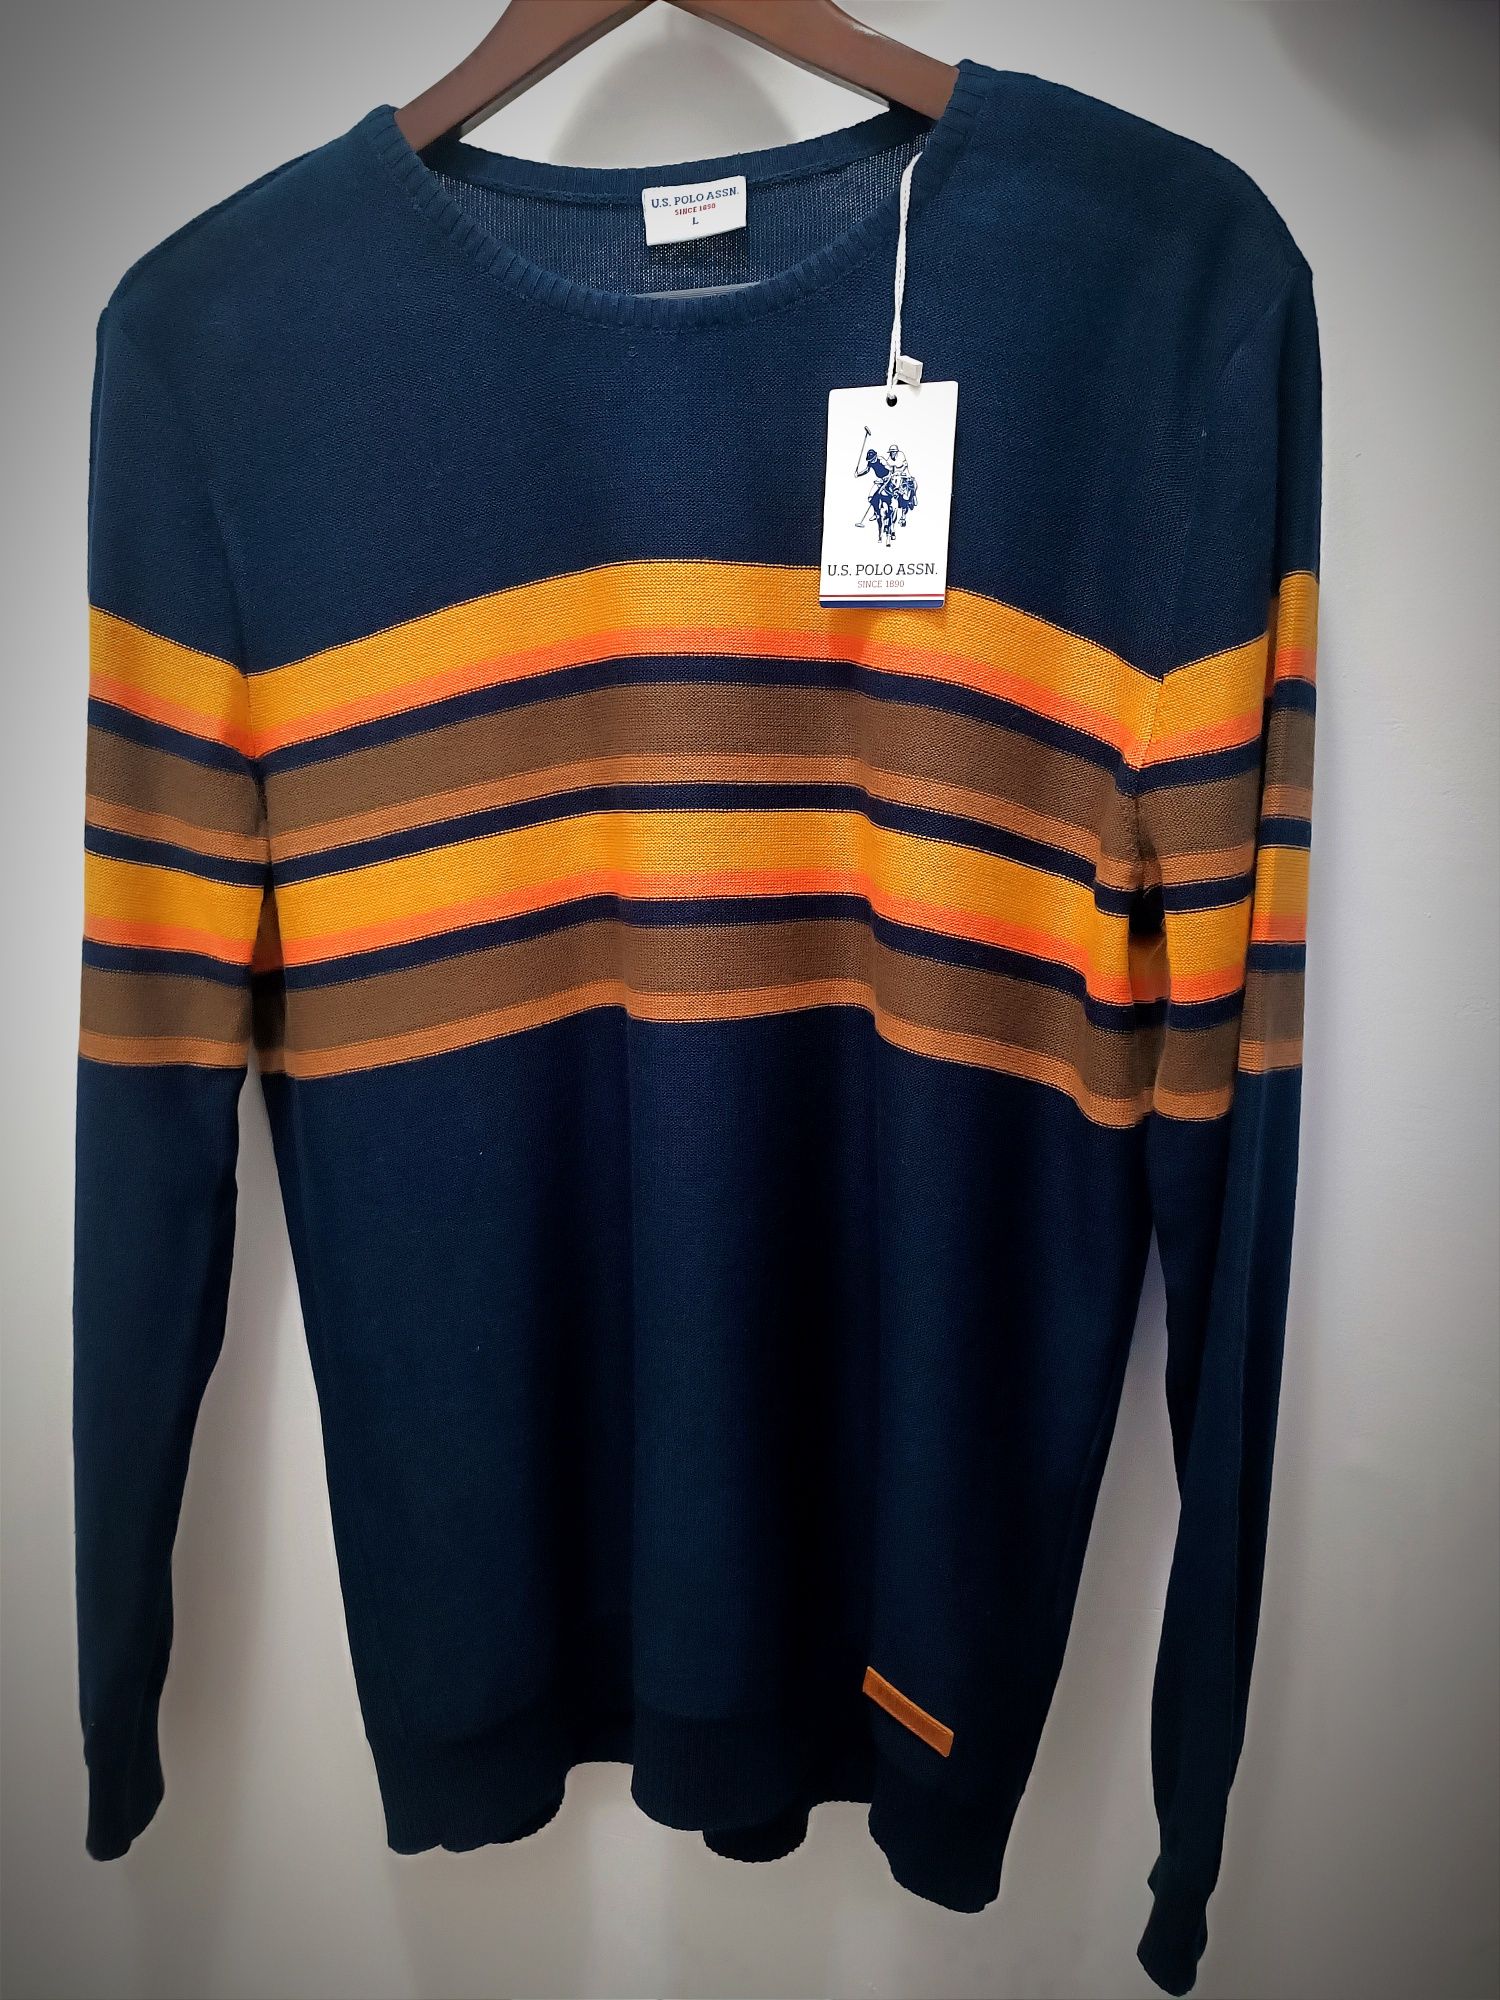 Нов мъжки стилен пуловер U.S. POLO ASSN, размер L/slim fit/